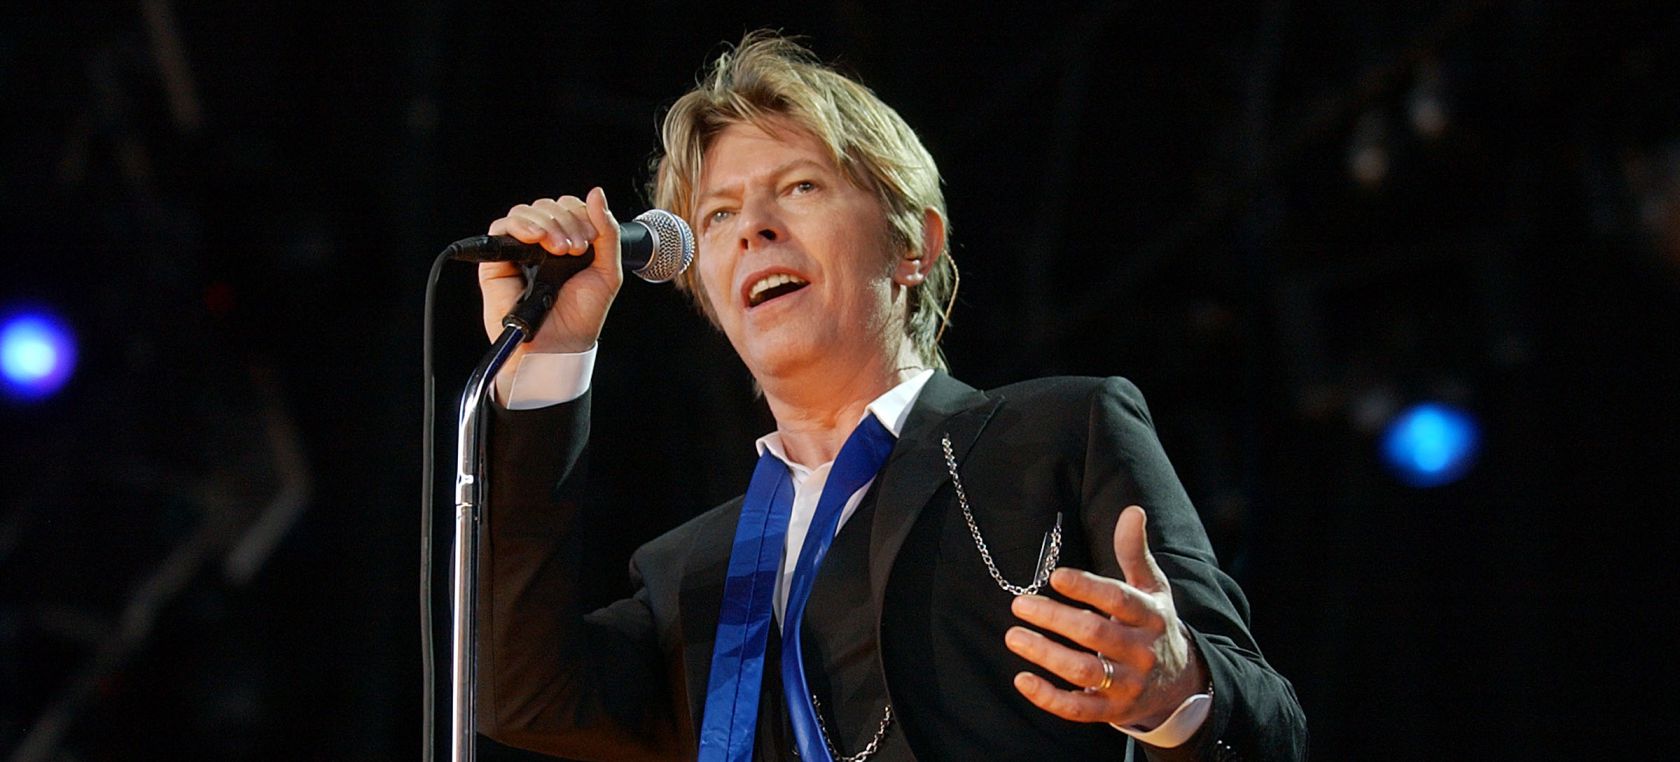 ¿Cuántas personalidades tuvo David Bowie? La guía completa de su universo creativo